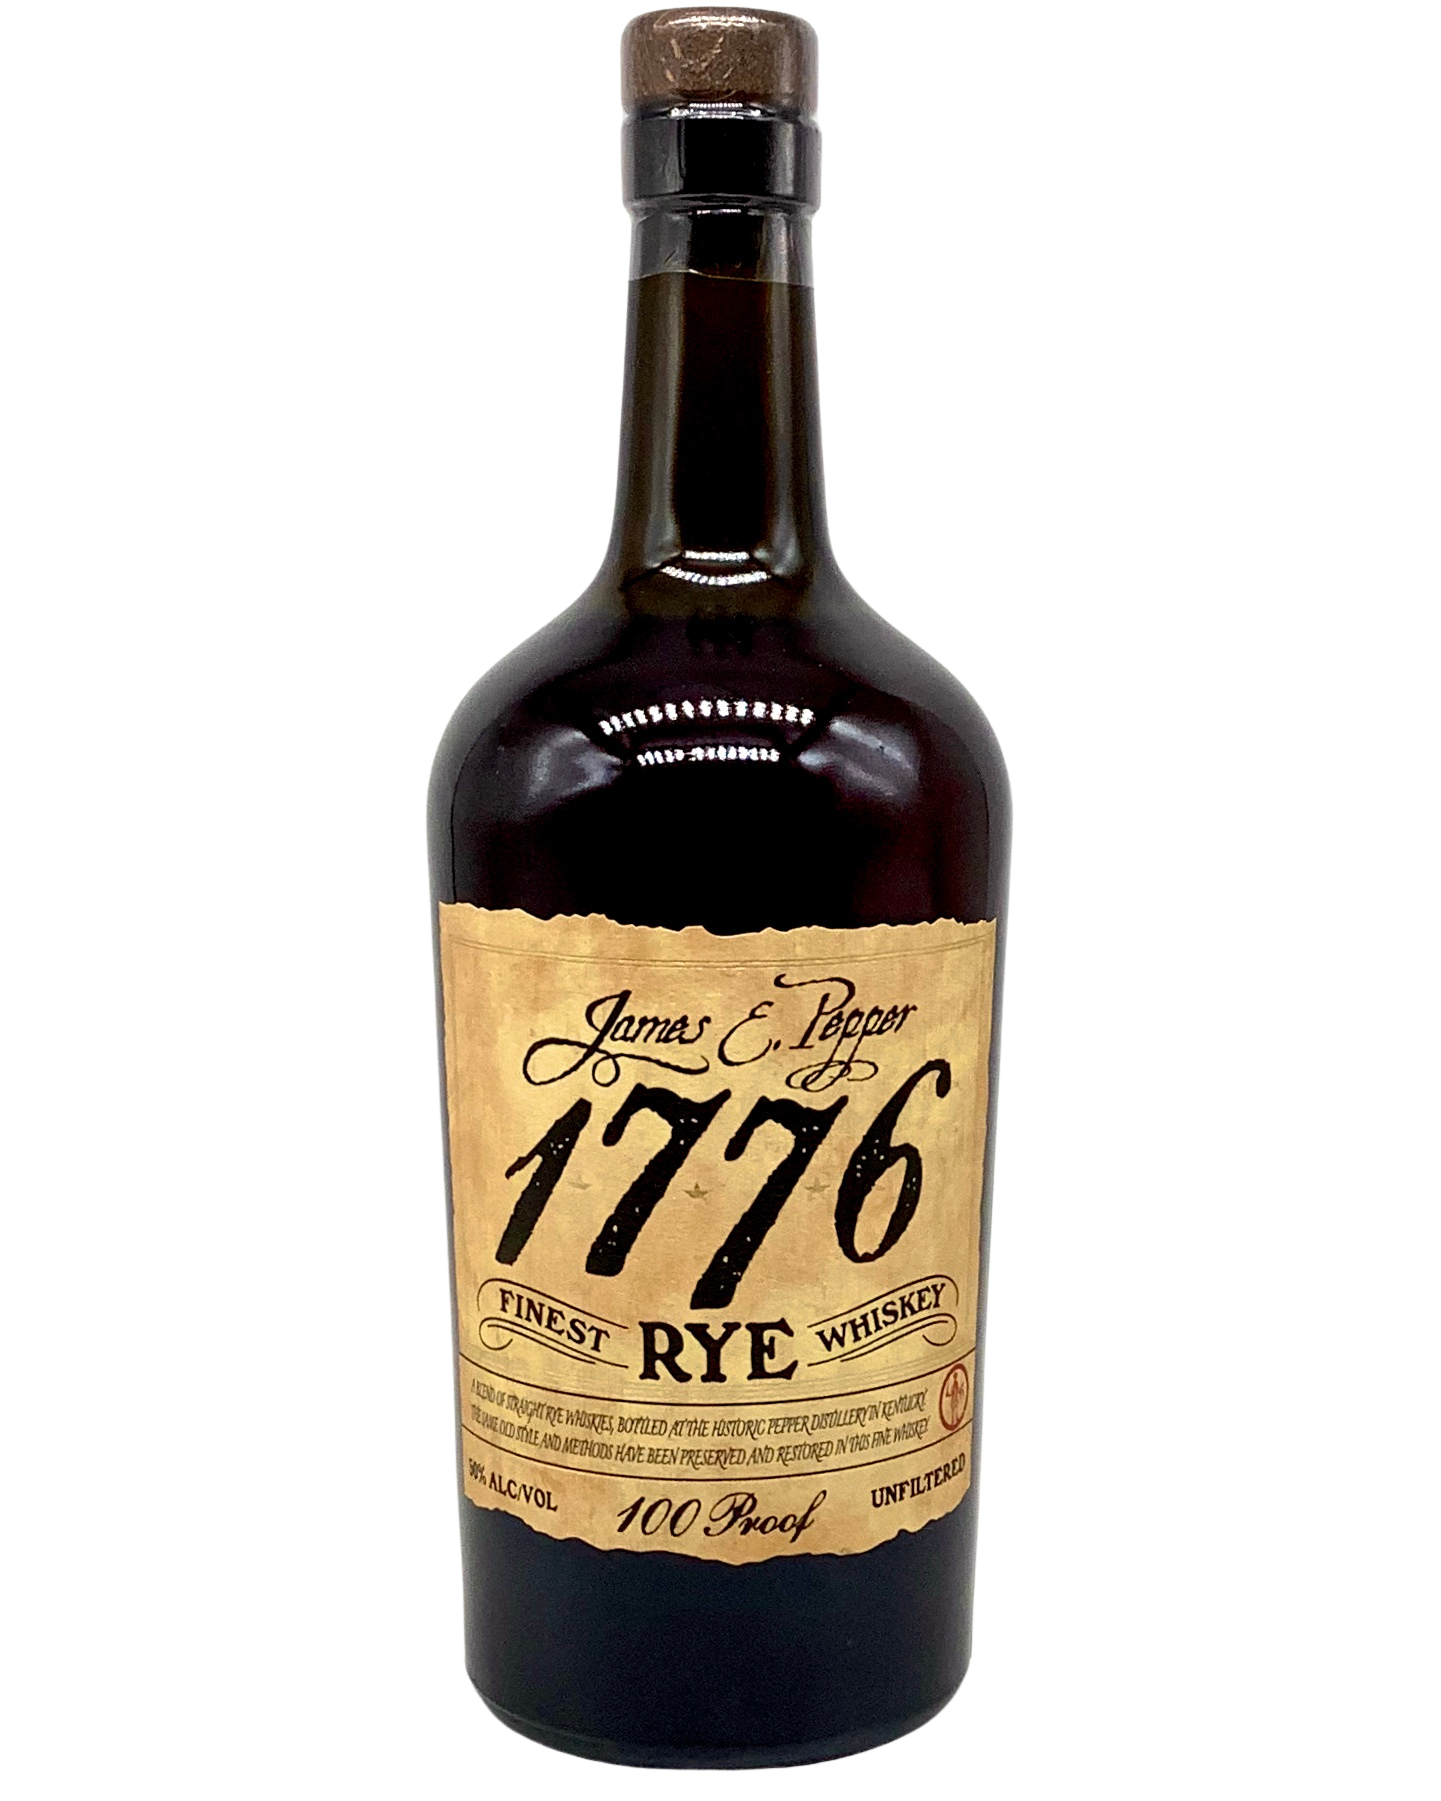 James Pepper 1776 Kentucky Straight Rye Whiskey